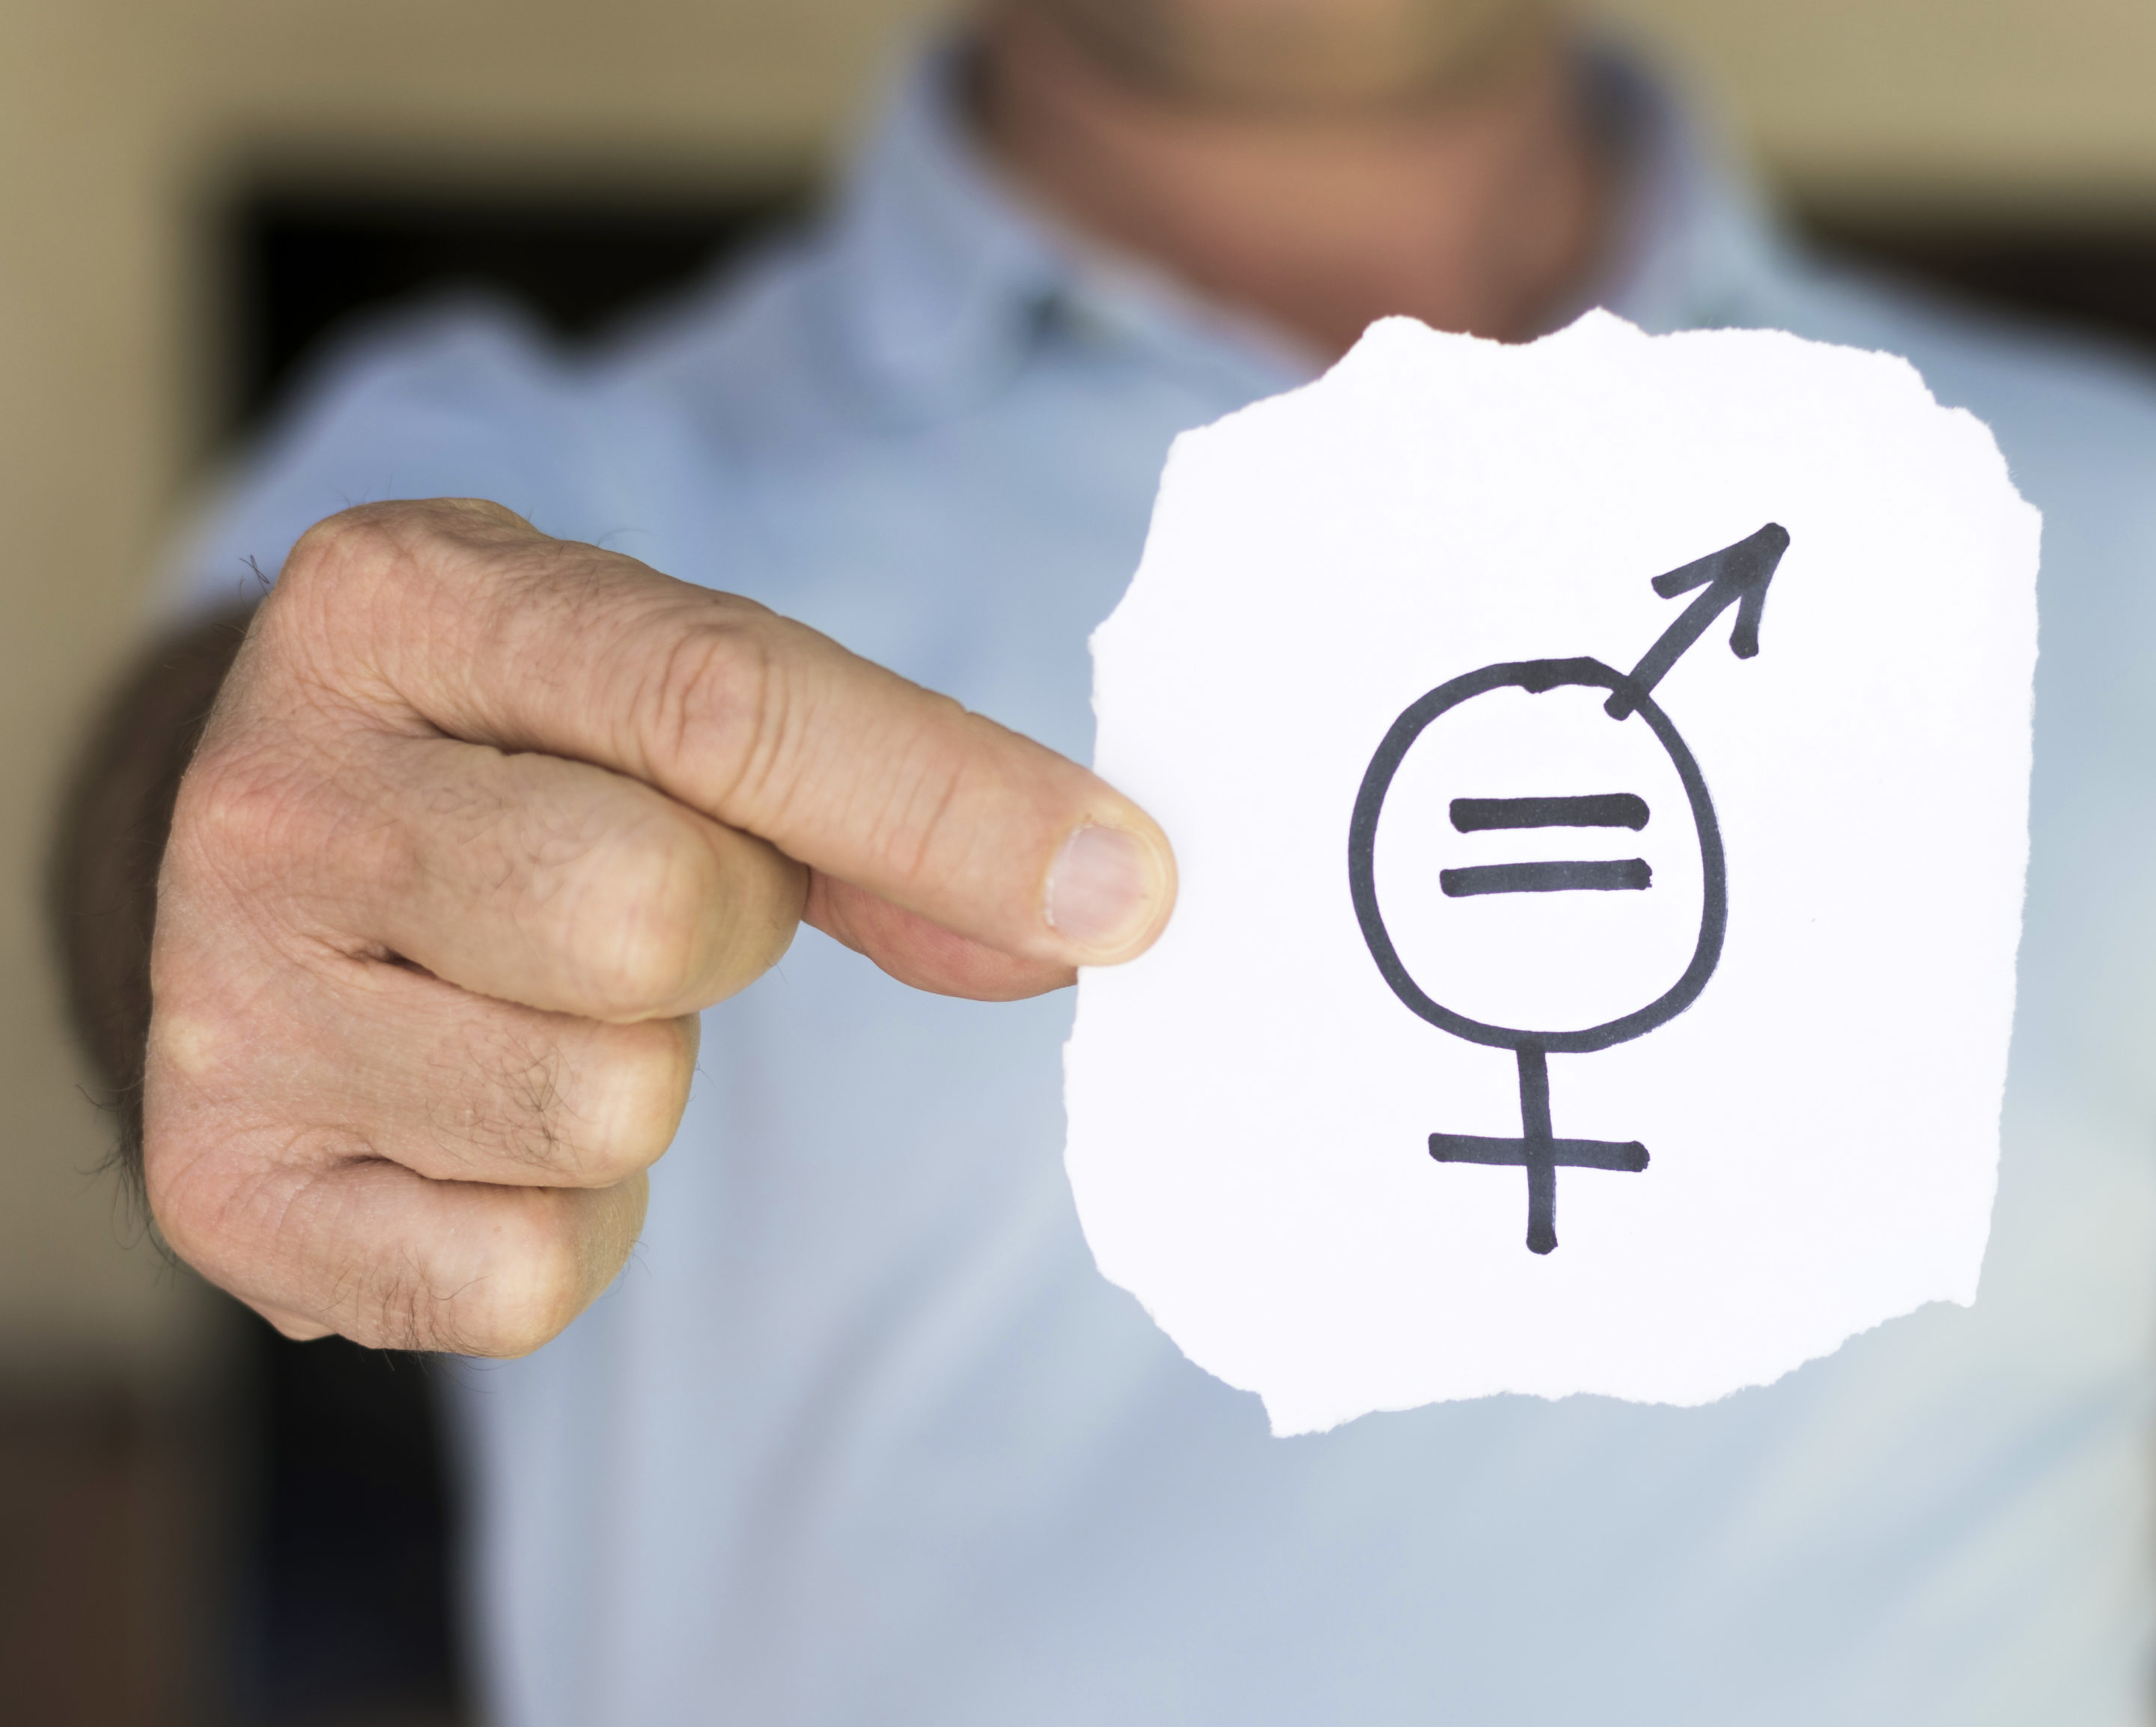 Plan de Igualdad en las empresas; en la imagen se ve a un hombre sujetando un papel con un dibujo que mezcla el símbolo de hombre y de mujer